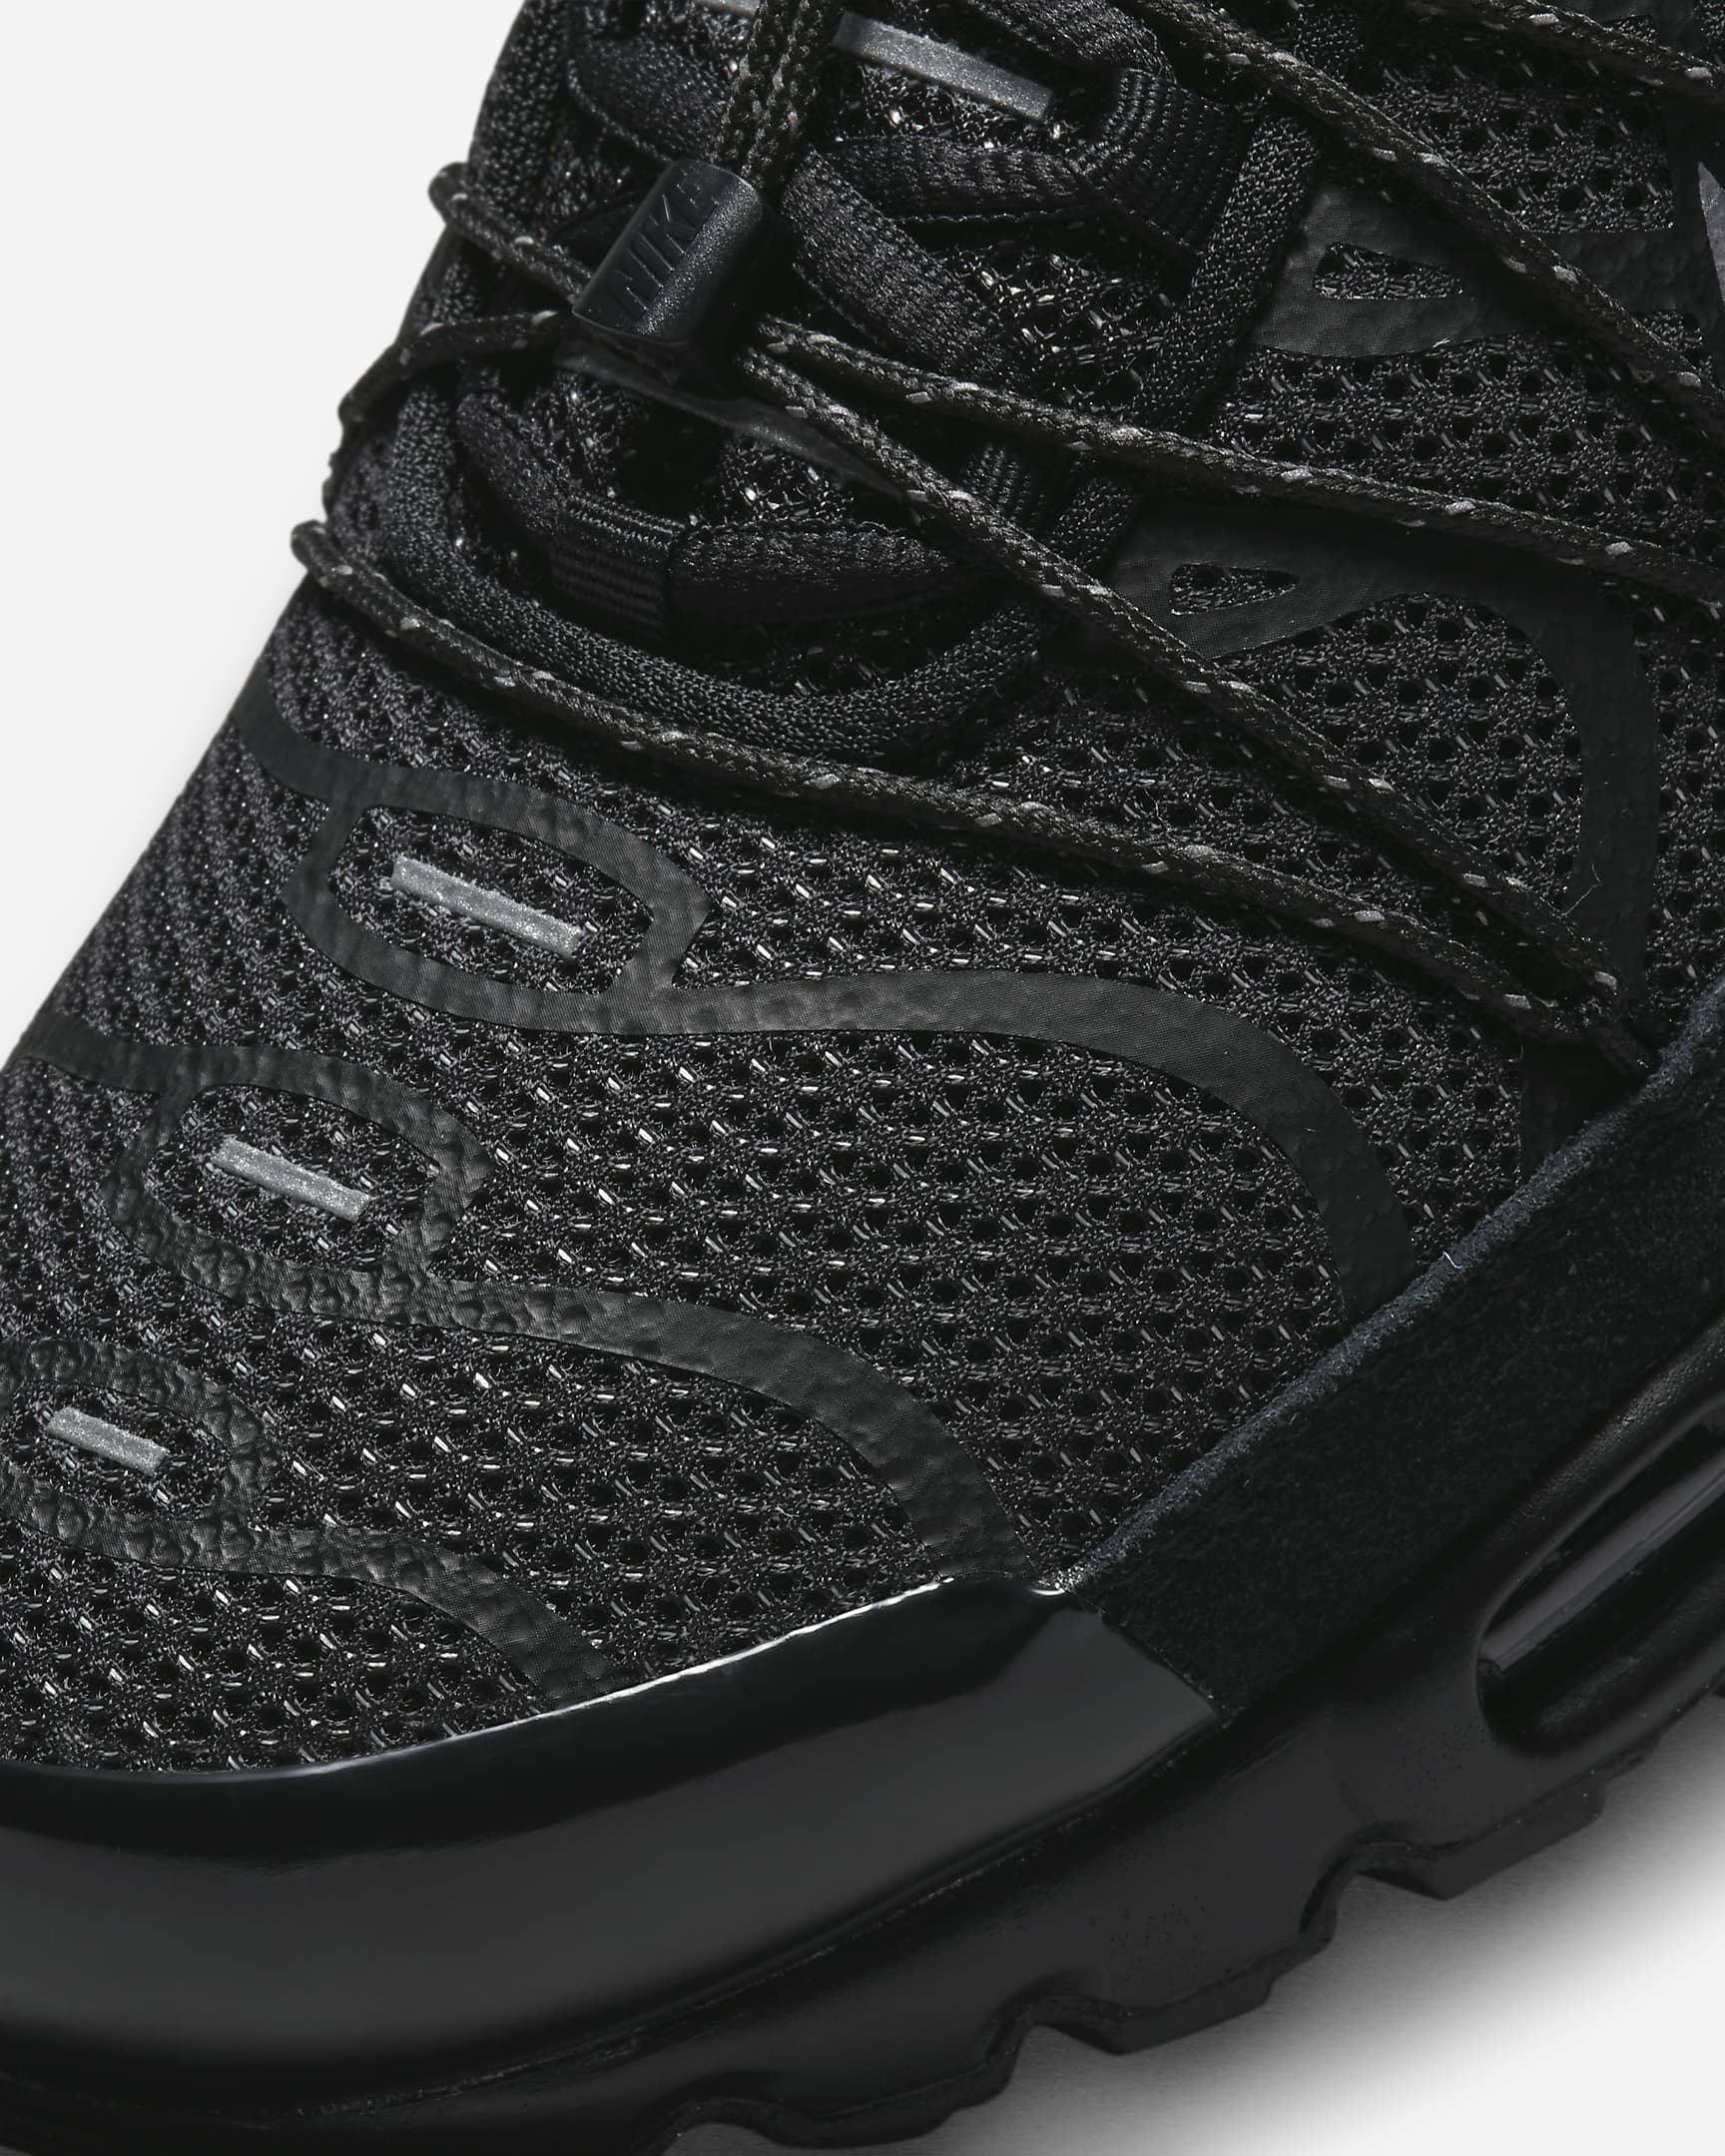 Sapatilhas Nike Air Max Plus Utility para homem - Preto/Branco/Prateado metalizado